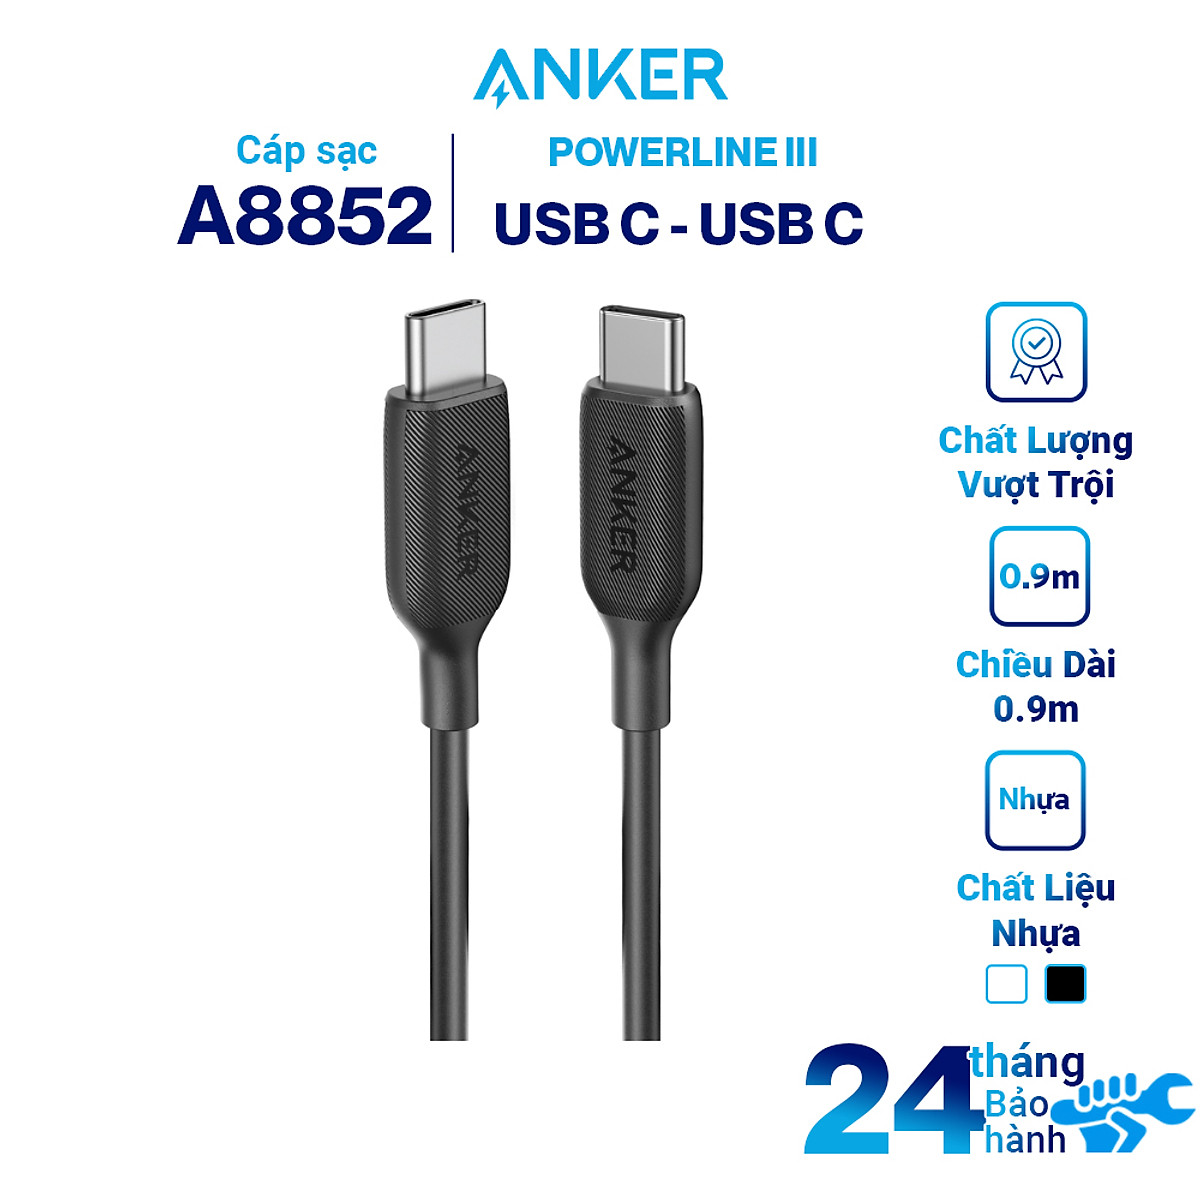 Dây Cáp Sạc Anker PowerLine III USB-C to USB-C 2.0 0.9m / 1.8m - A8852 / A8853 - Hàng Chính Hãng